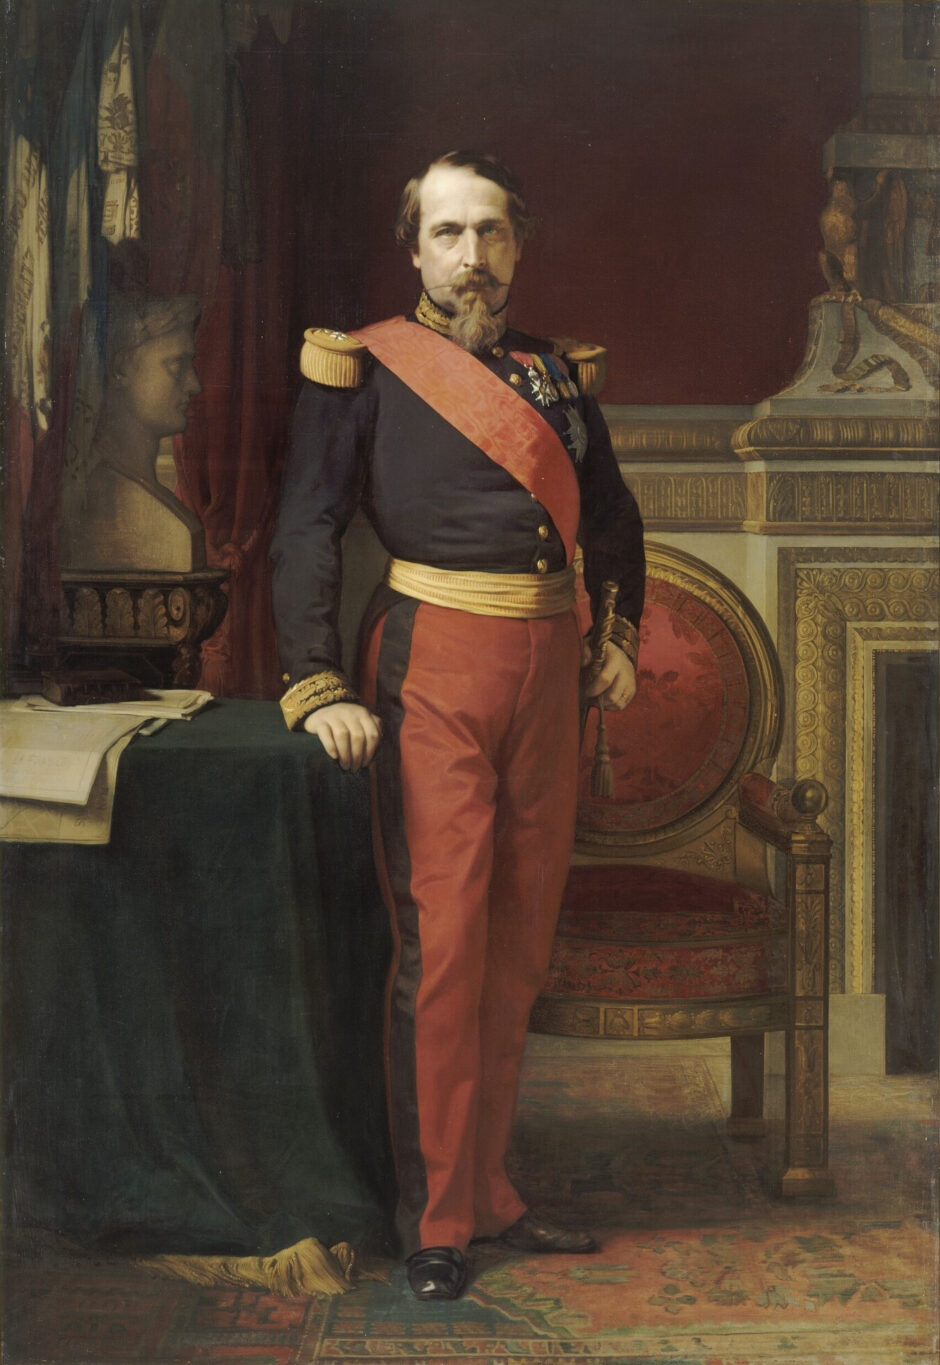 Portrait de Napoléon III en uniforme de général de division dans son grand cabinet des Tuileries (huile sur toile d'Hippolyte Flandrin, 1861)